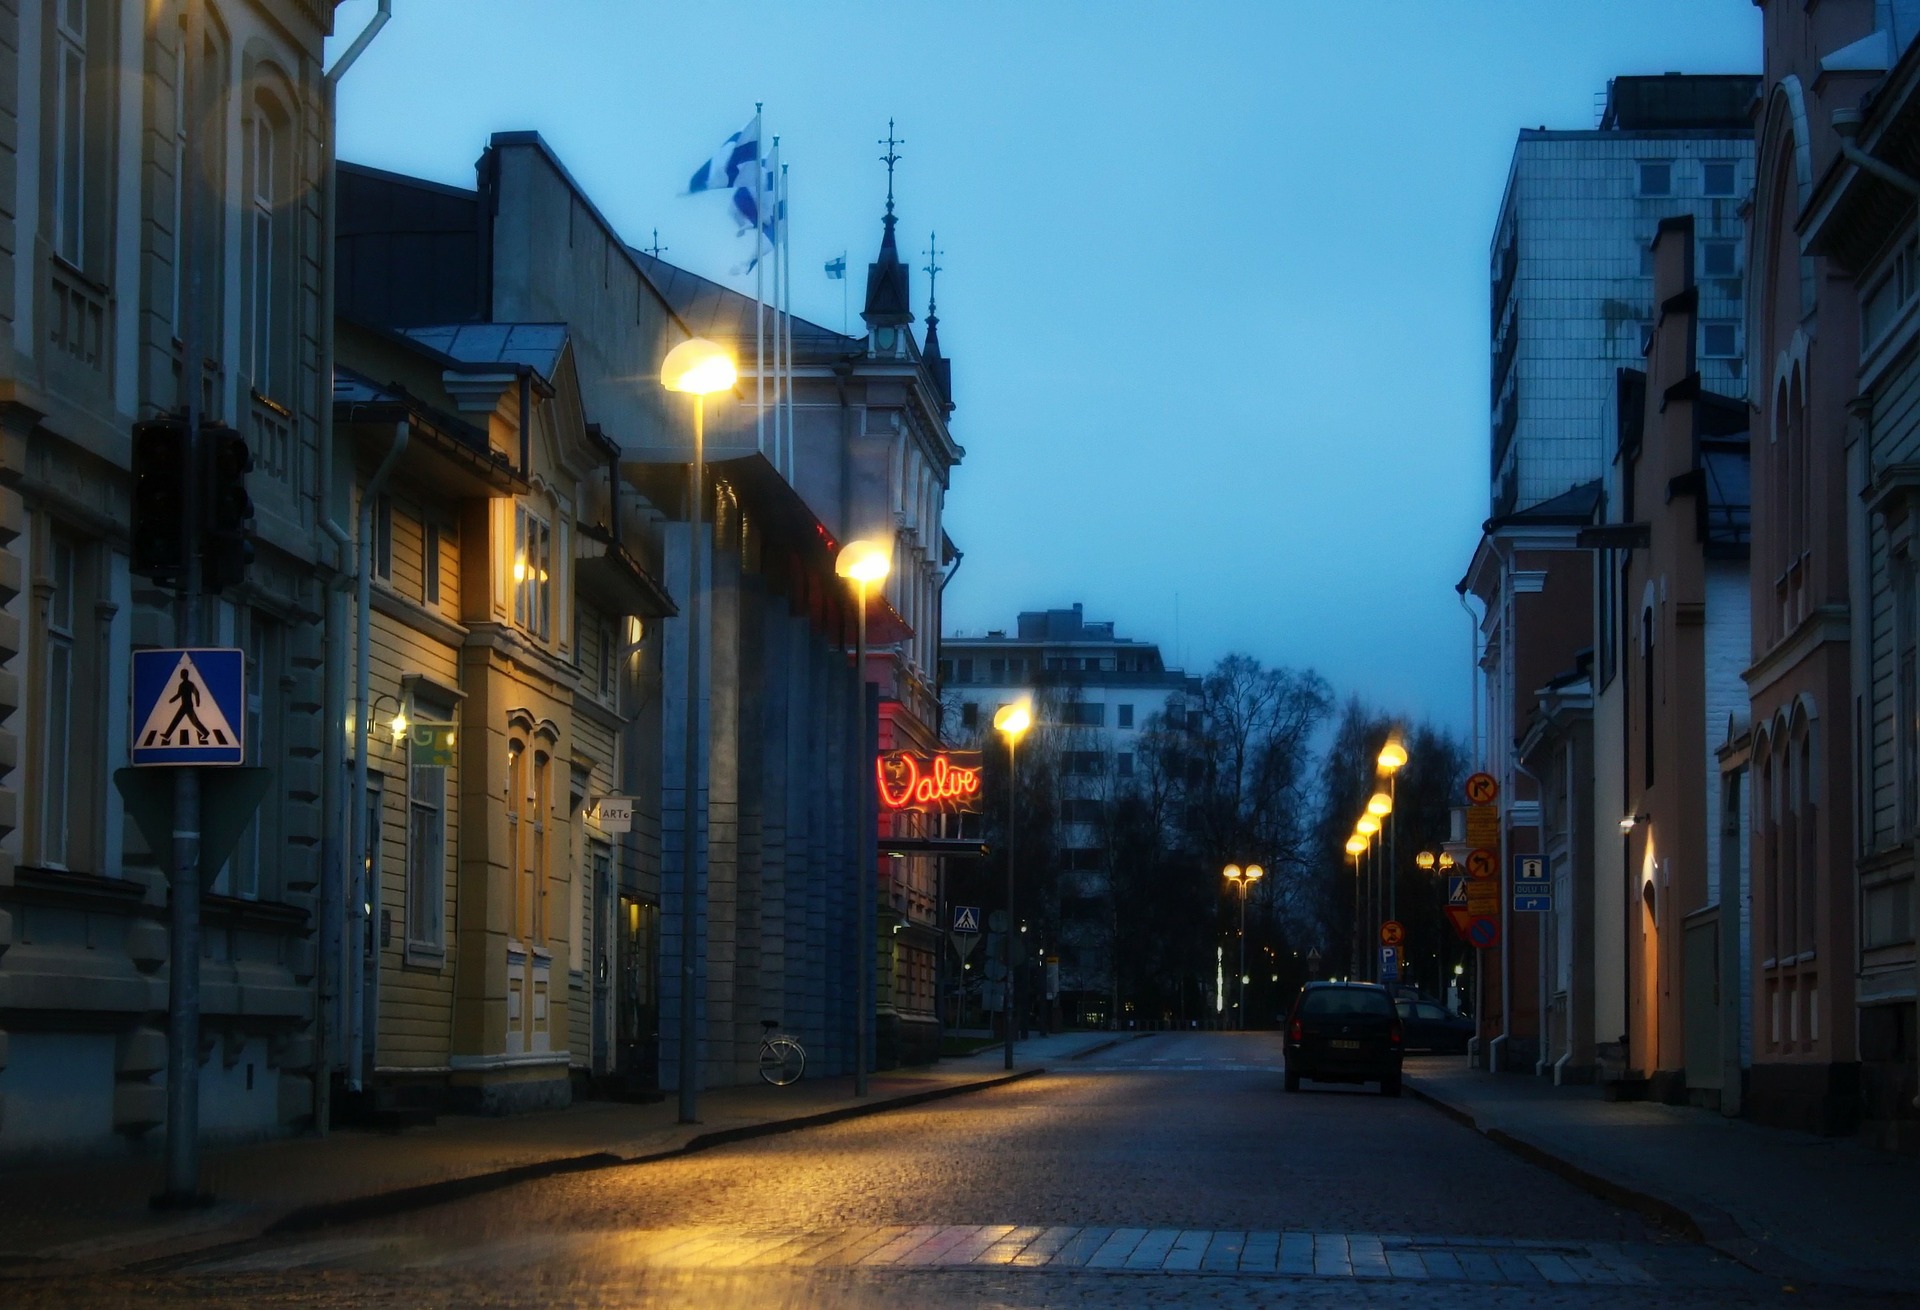 Näin hiljainen oli Oulu sinä hetkenä, kun kuvituskuvan ottaja oli liikkeellä. Torstaina 15.8. tilanne lienee toinen. Kuva: David Mark/Pixabay.